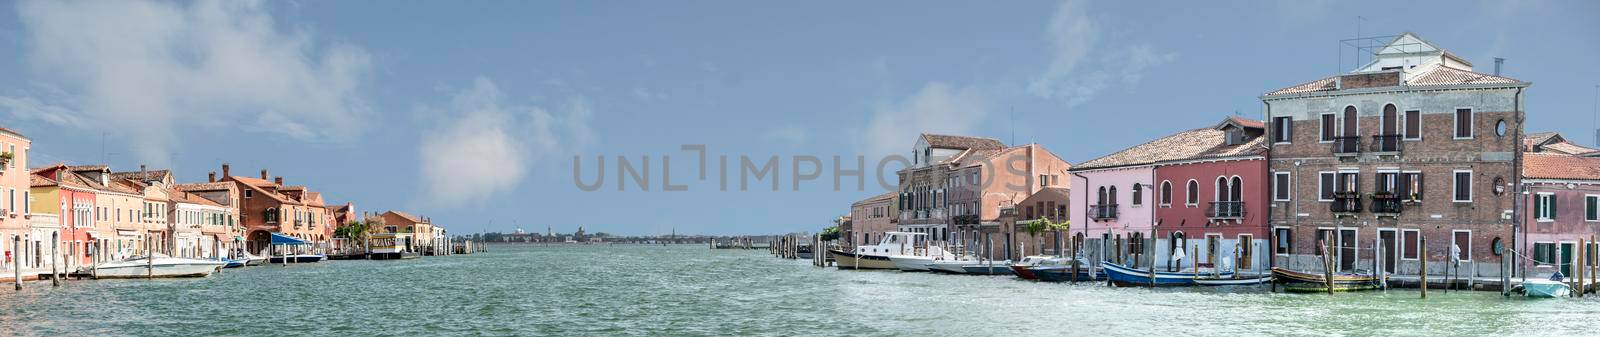 Overview of the Cannareggio canal in Murano, Venice